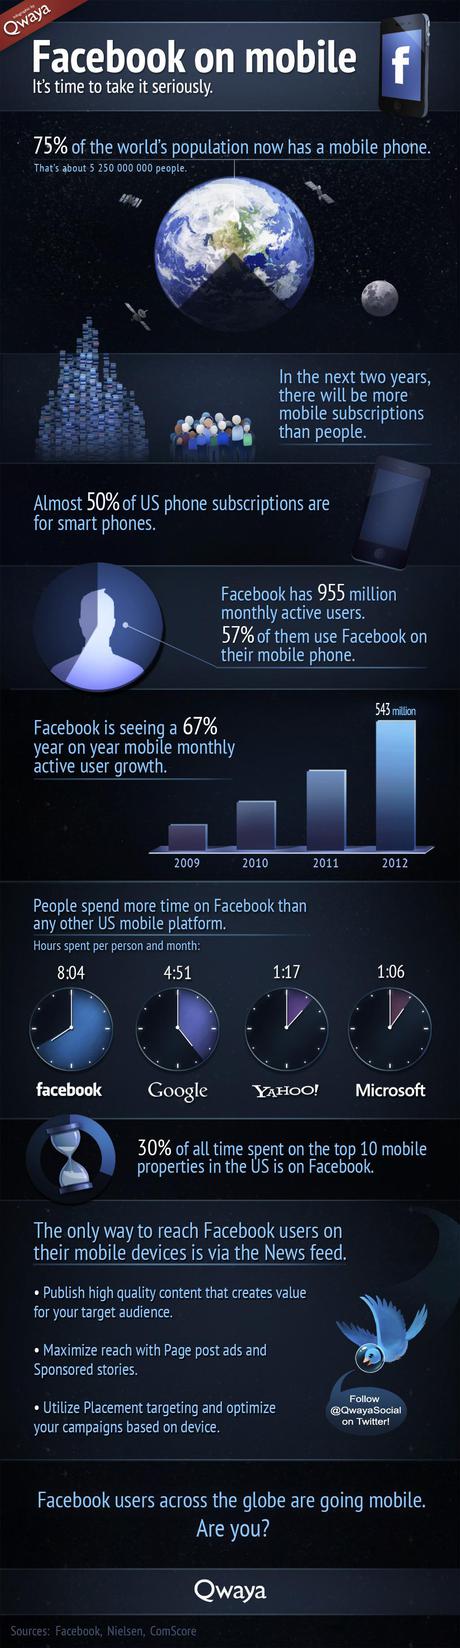 Les chiffres de Facebook sur mobile en image.